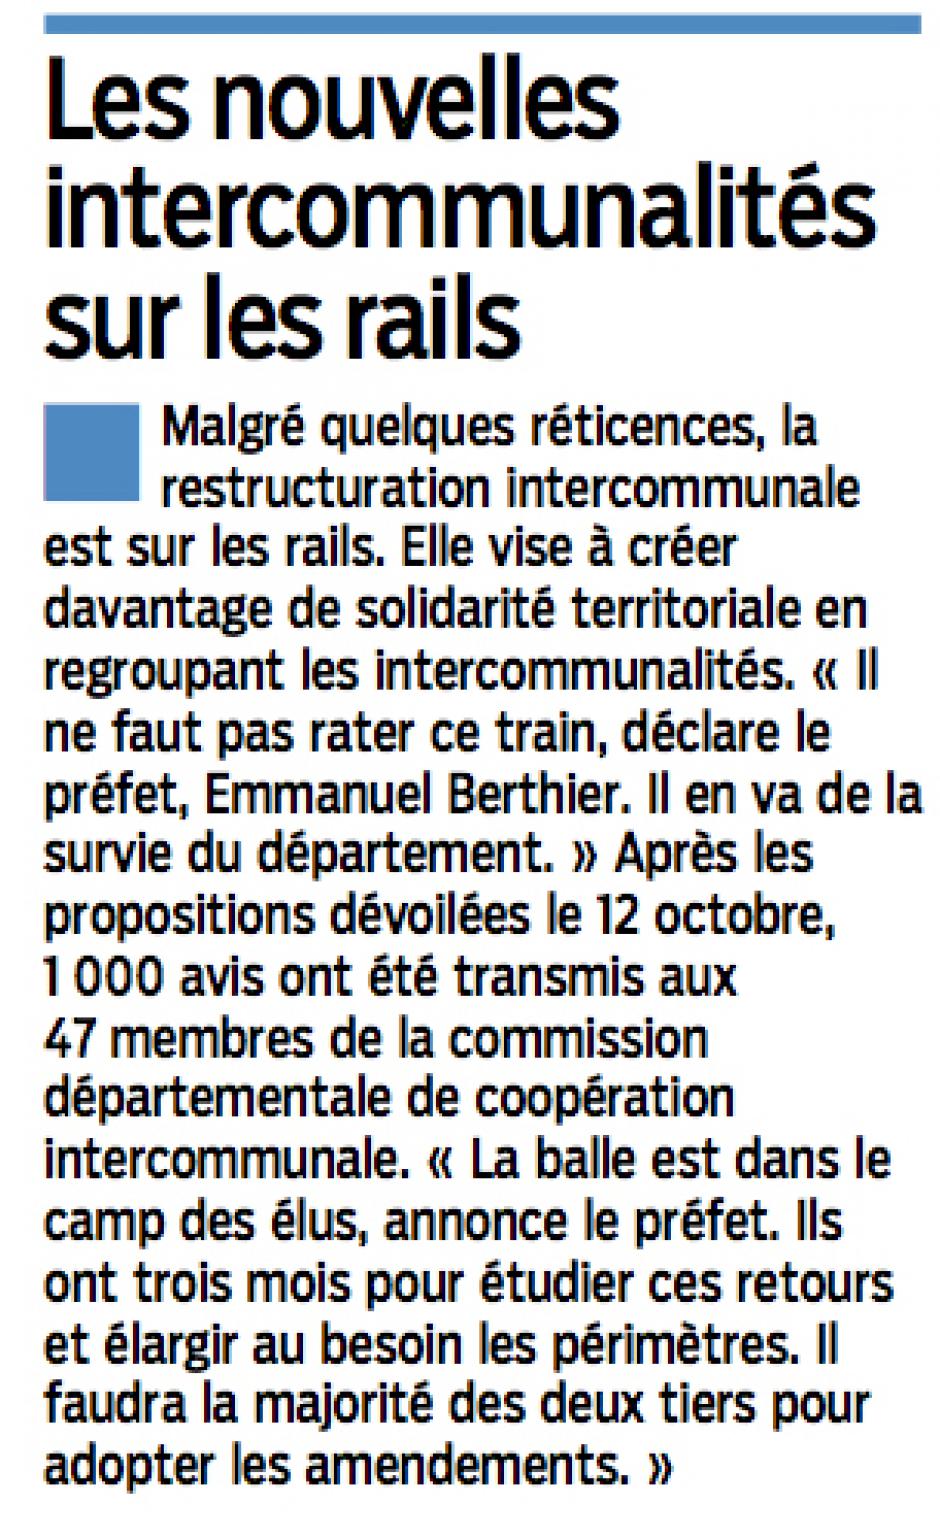 20151231-LeP-Oise-Les nouvelles intercommunalités sur les rails